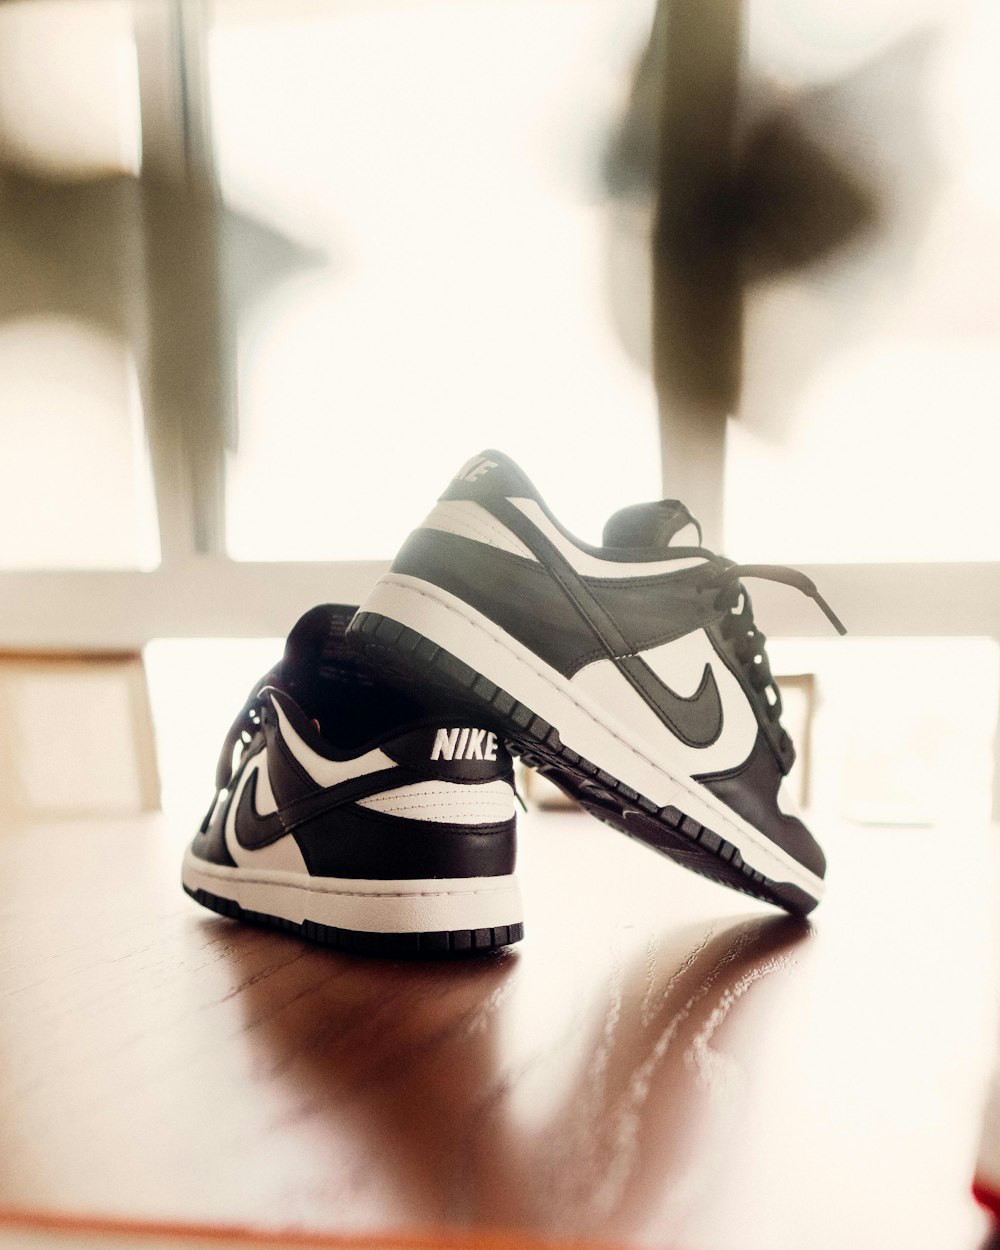 Black and white nike athletic shoes photo – Free Black Image on Unsplash